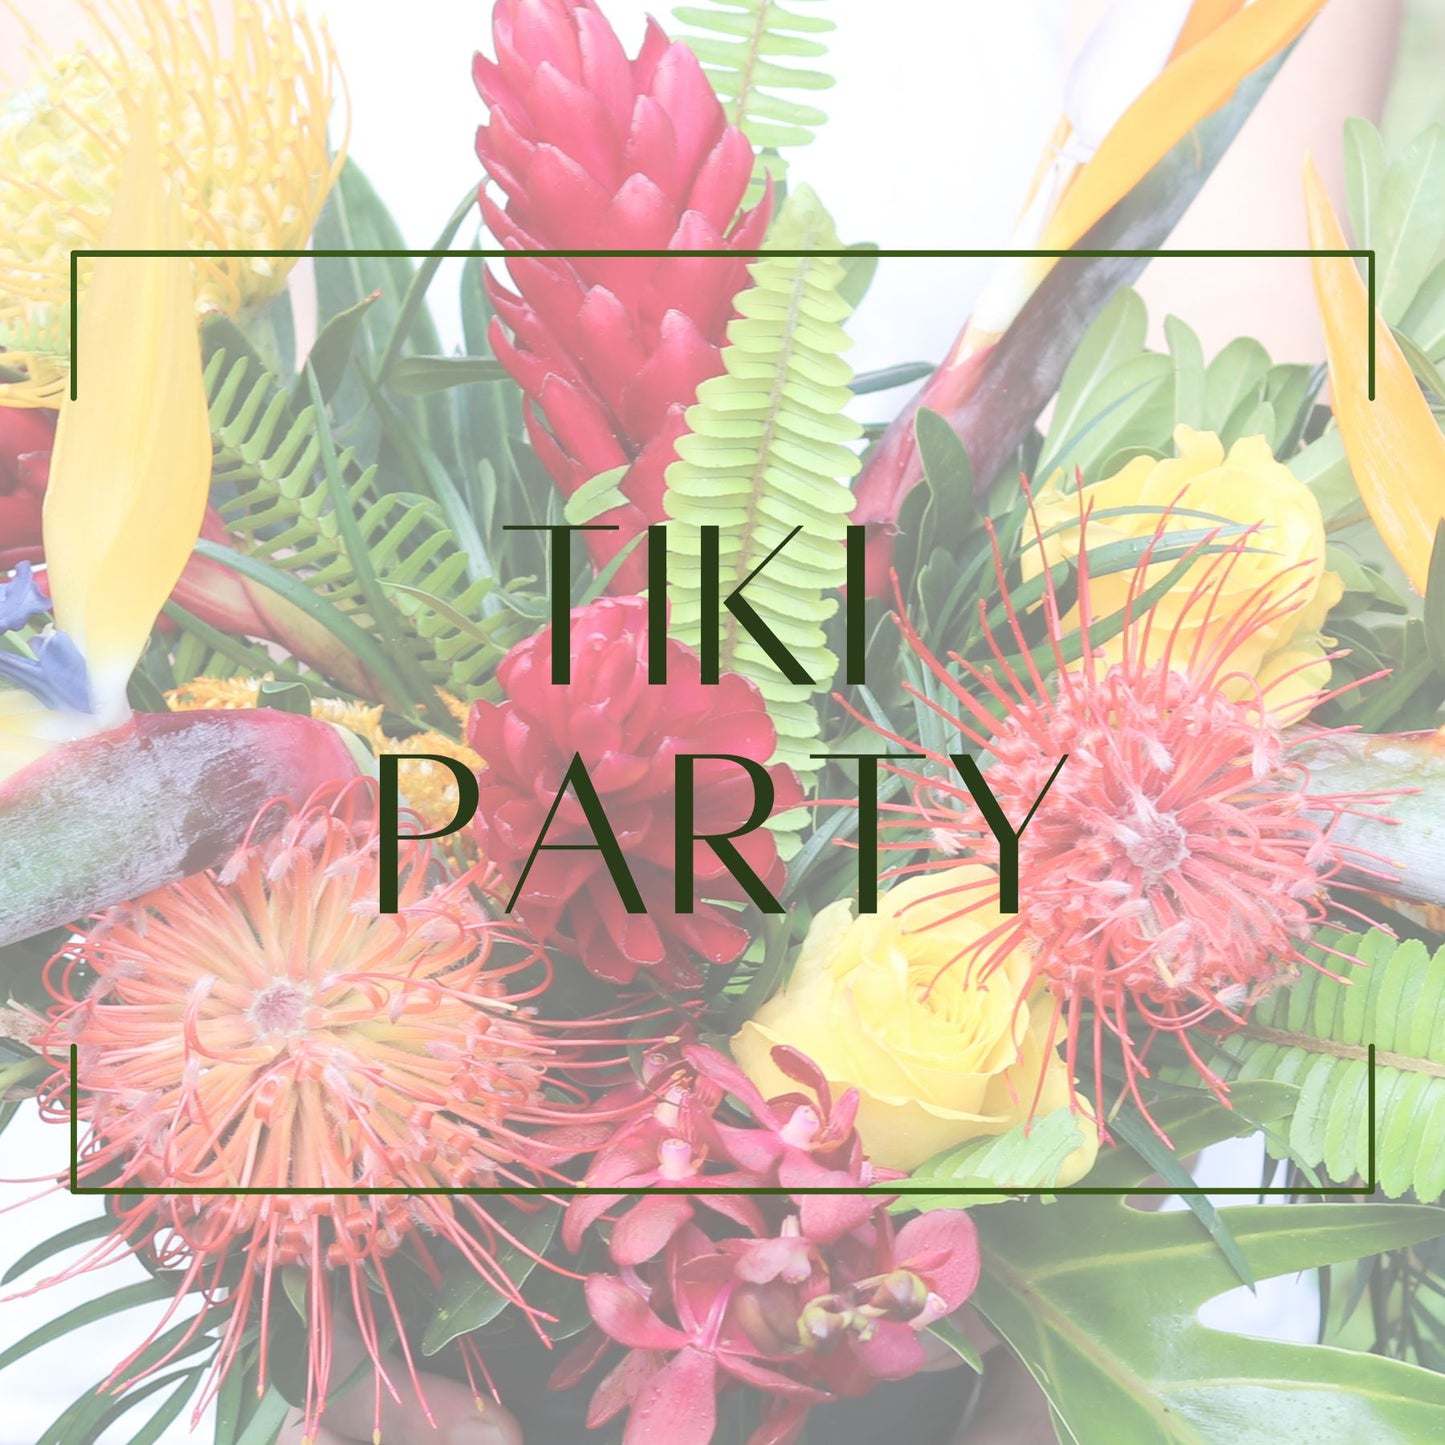 Tiki Party - Long Table Decor